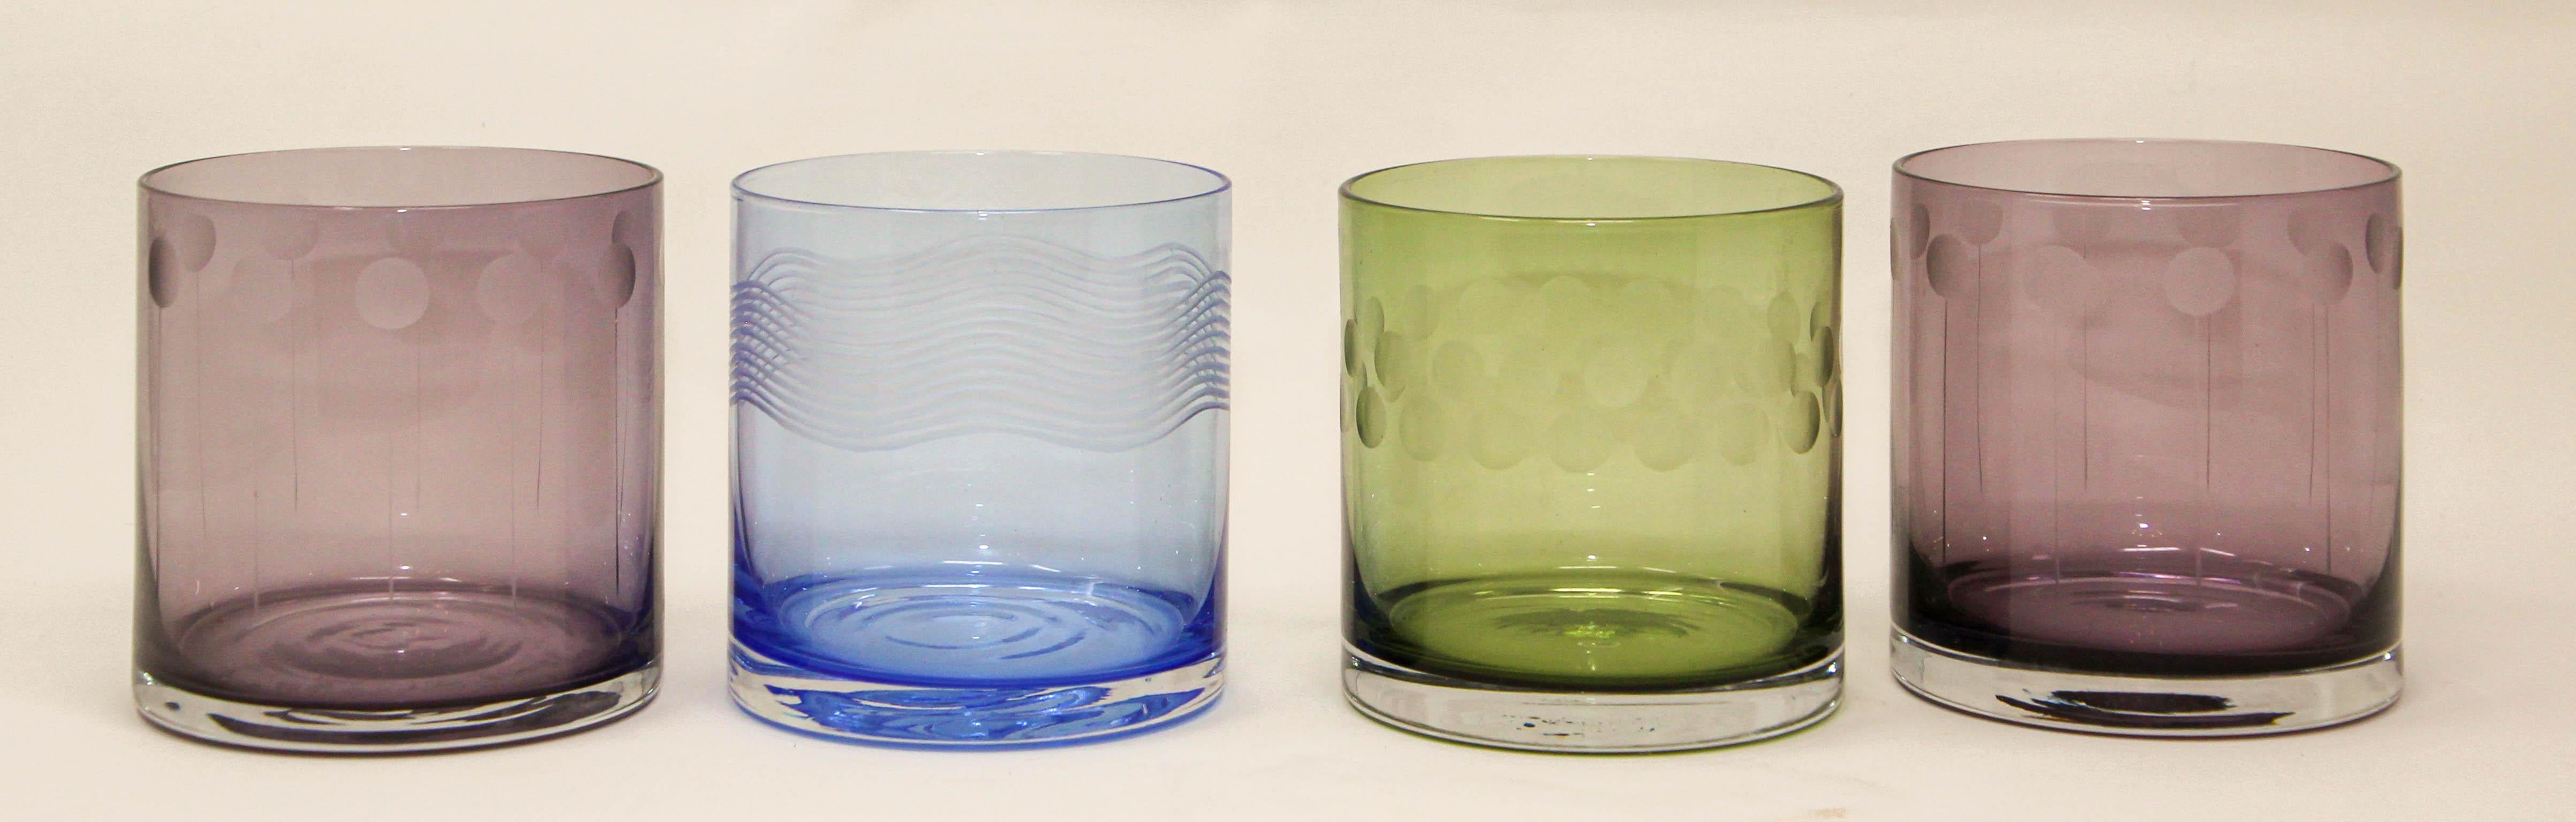 Set aus vier farbigen Vintage-Whiskey-Gläsern, doppelte altmodische Kristallgläser mit geätztem Design.
Farbige mundgeblasene Kristallgläser mit verschiedenen Farben und Ätzungen im Glas.
Ob für Cocktails, Säfte oder Wasser, die Gläser liegen gut in